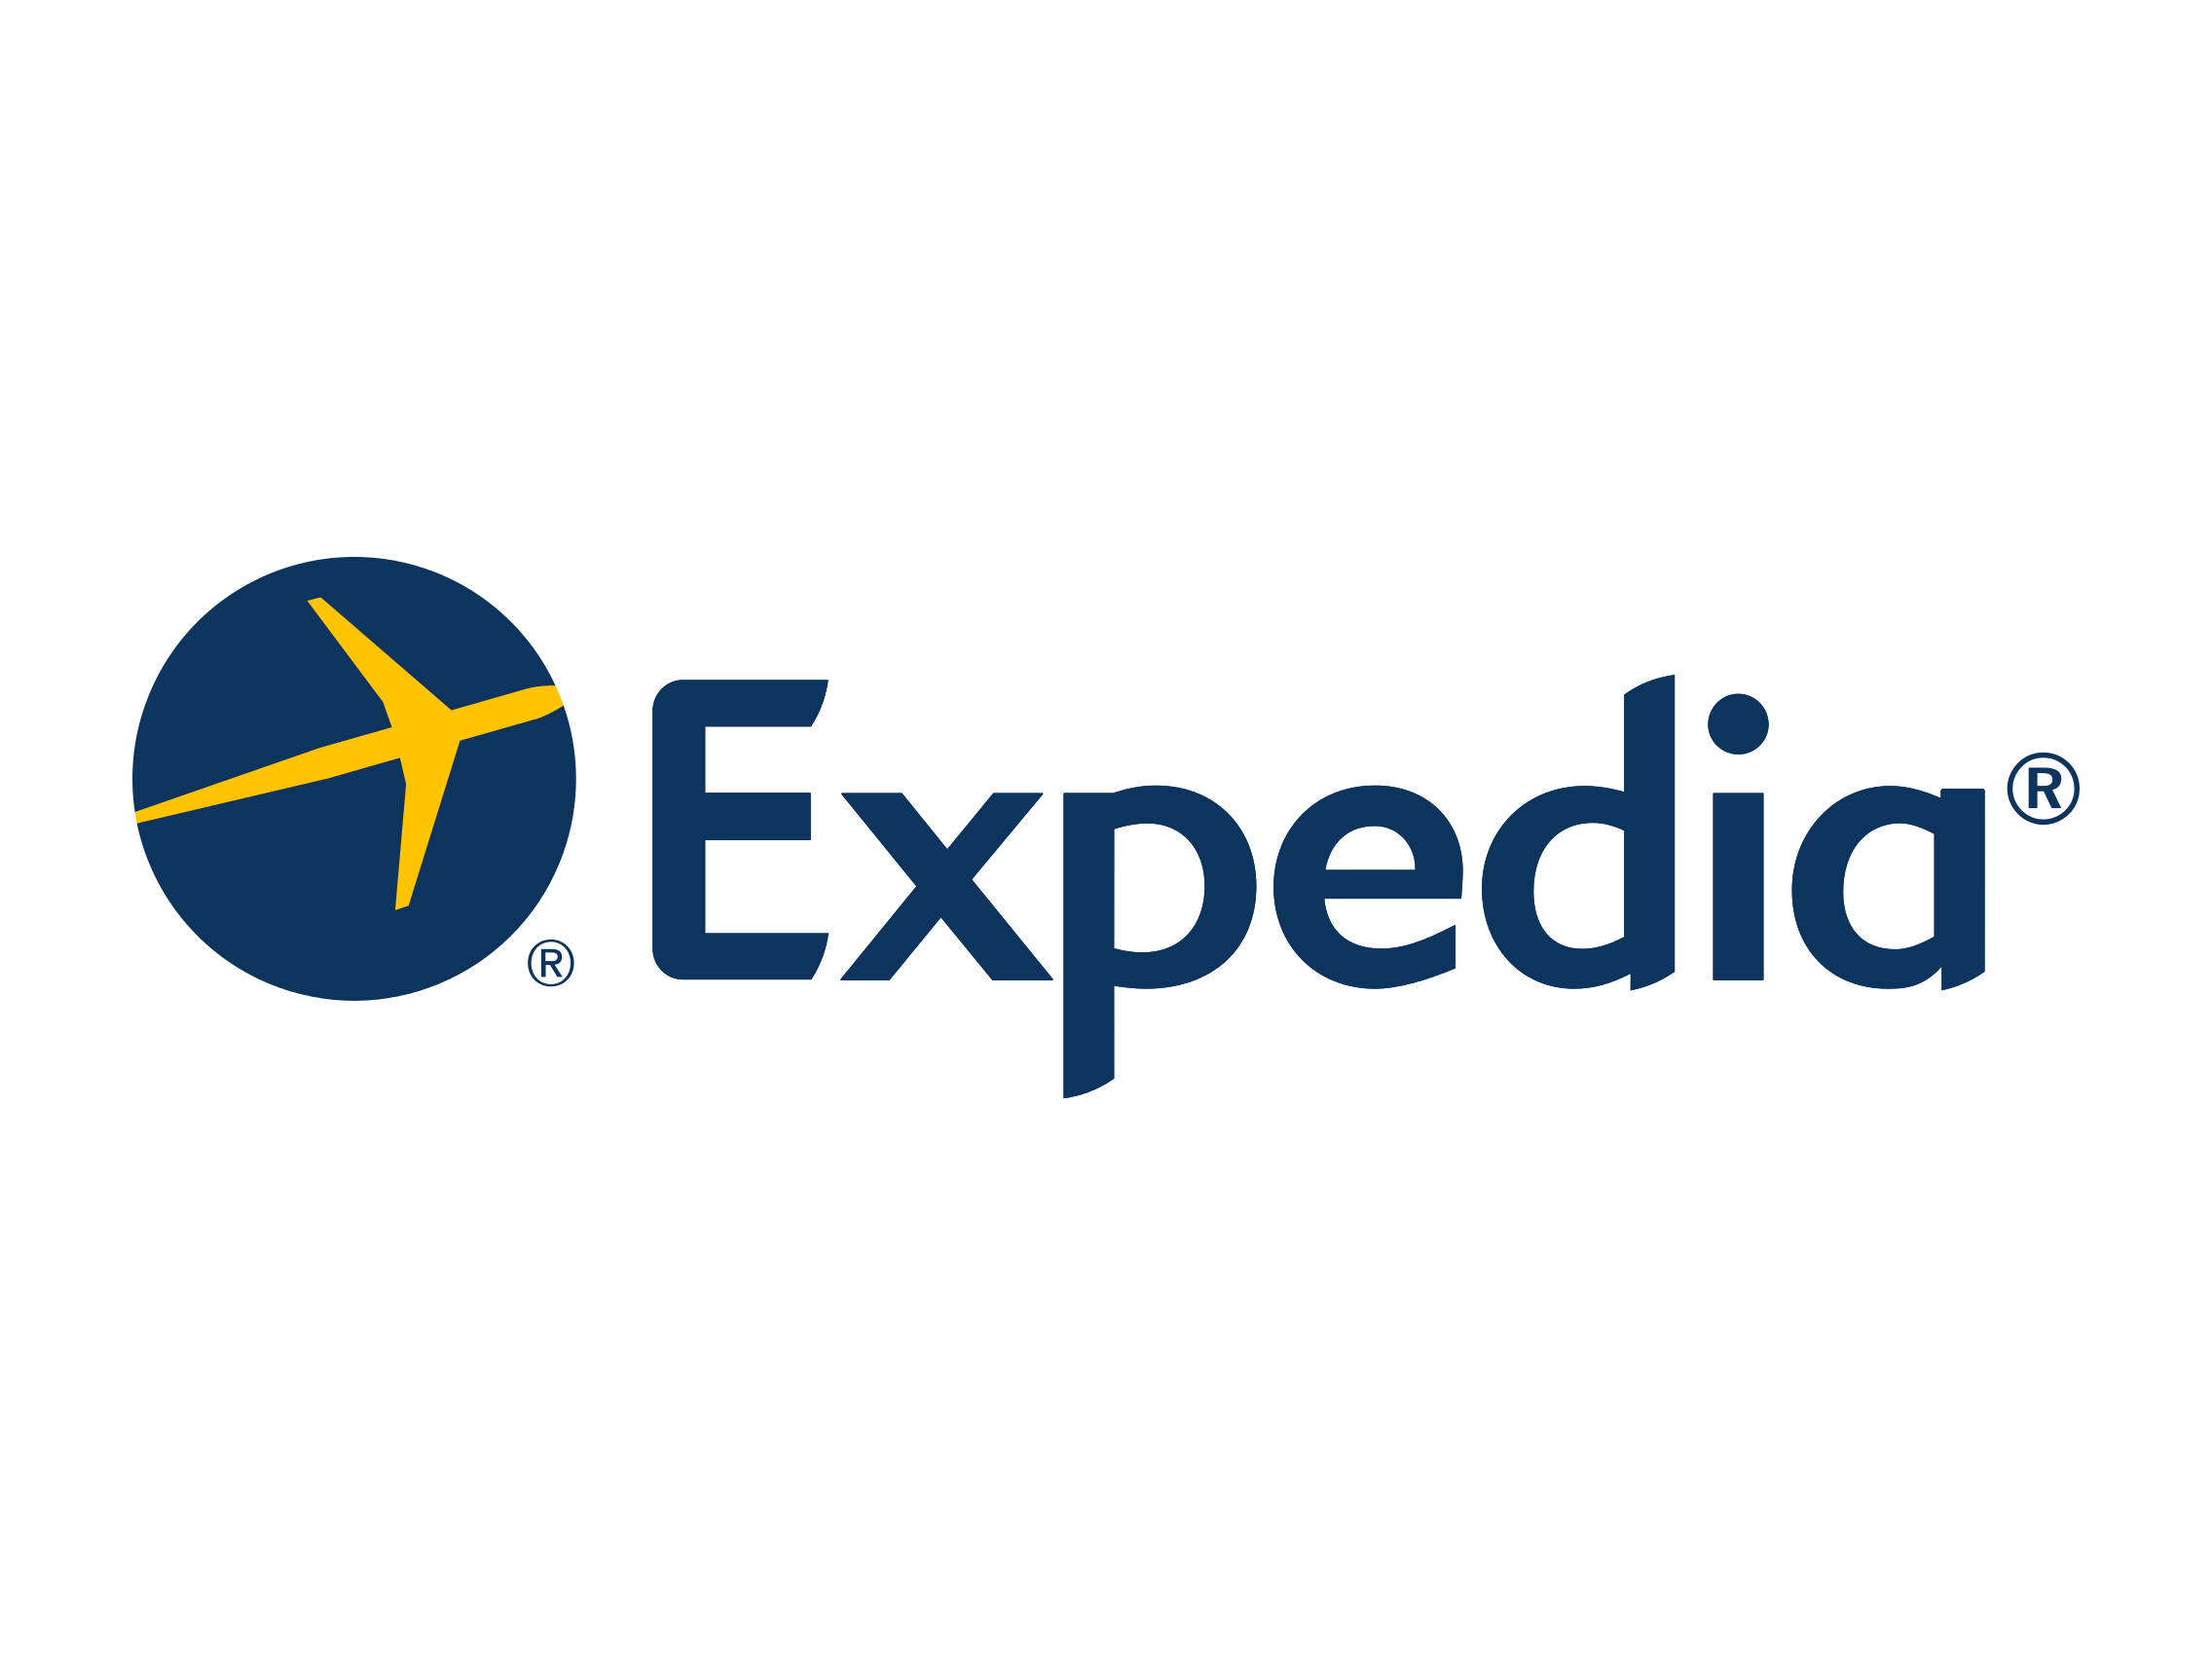 expedia travel company